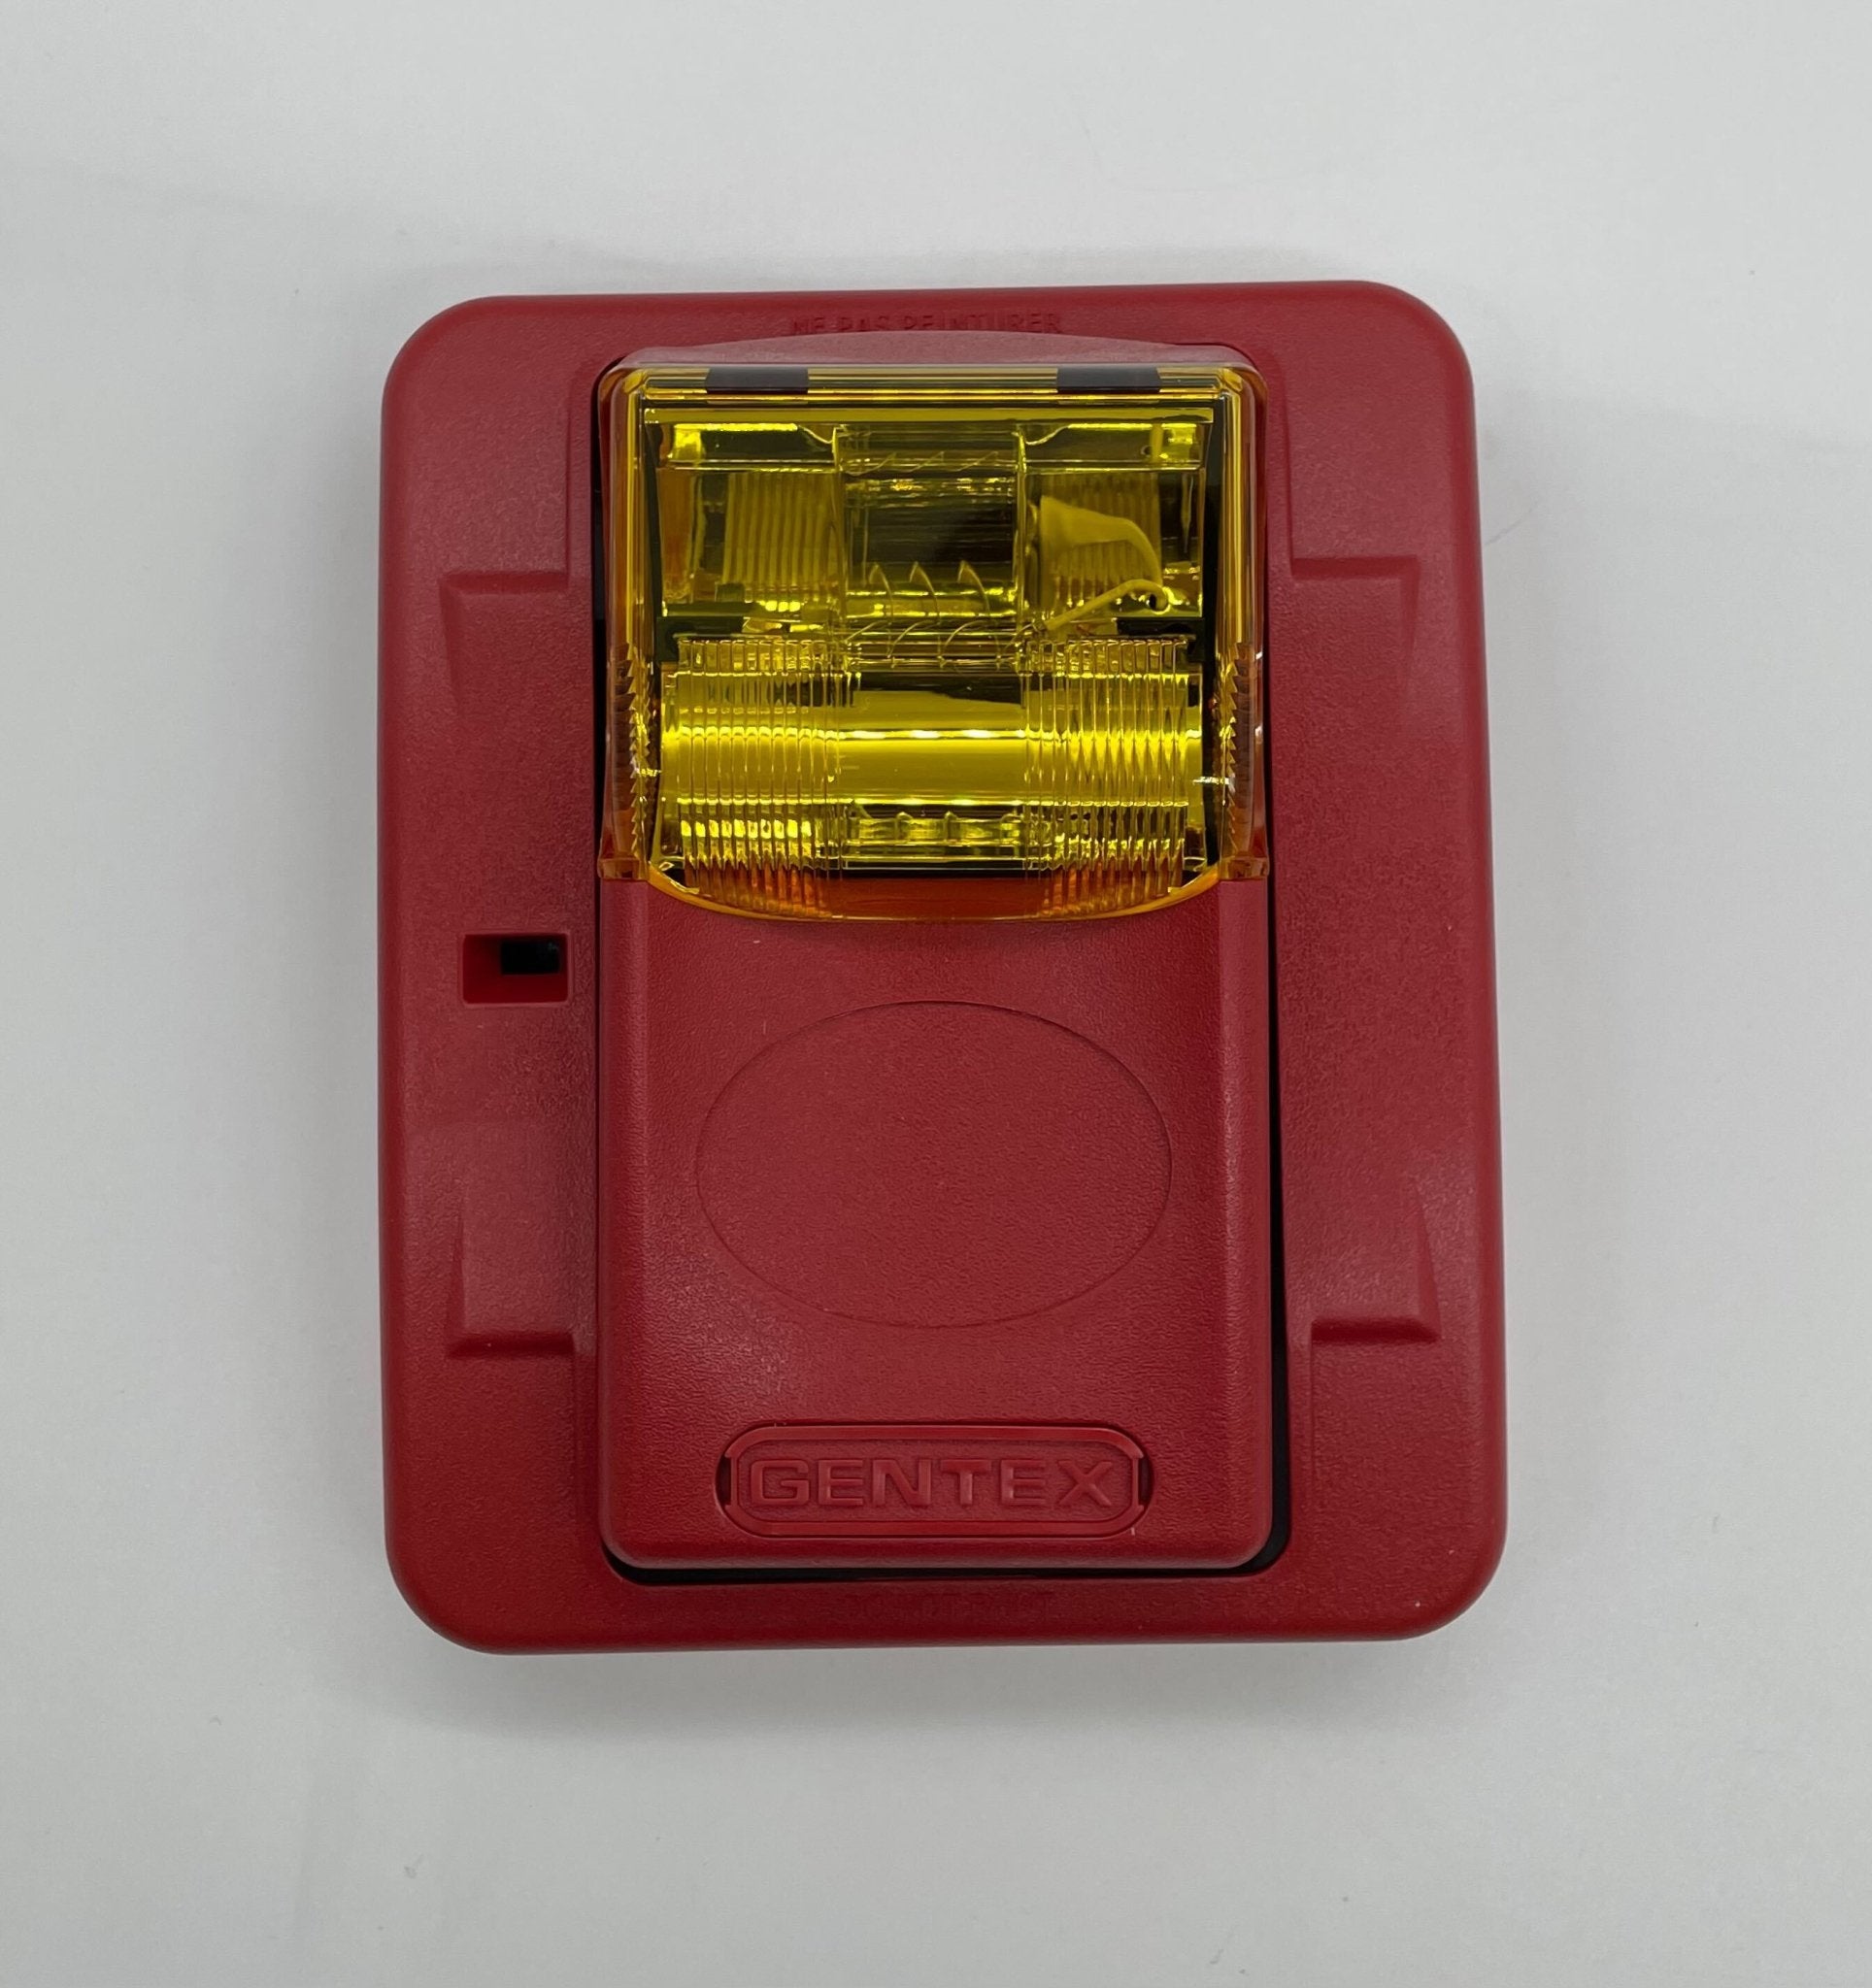 Gentex GESA24PWR - The Fire Alarm Supplier